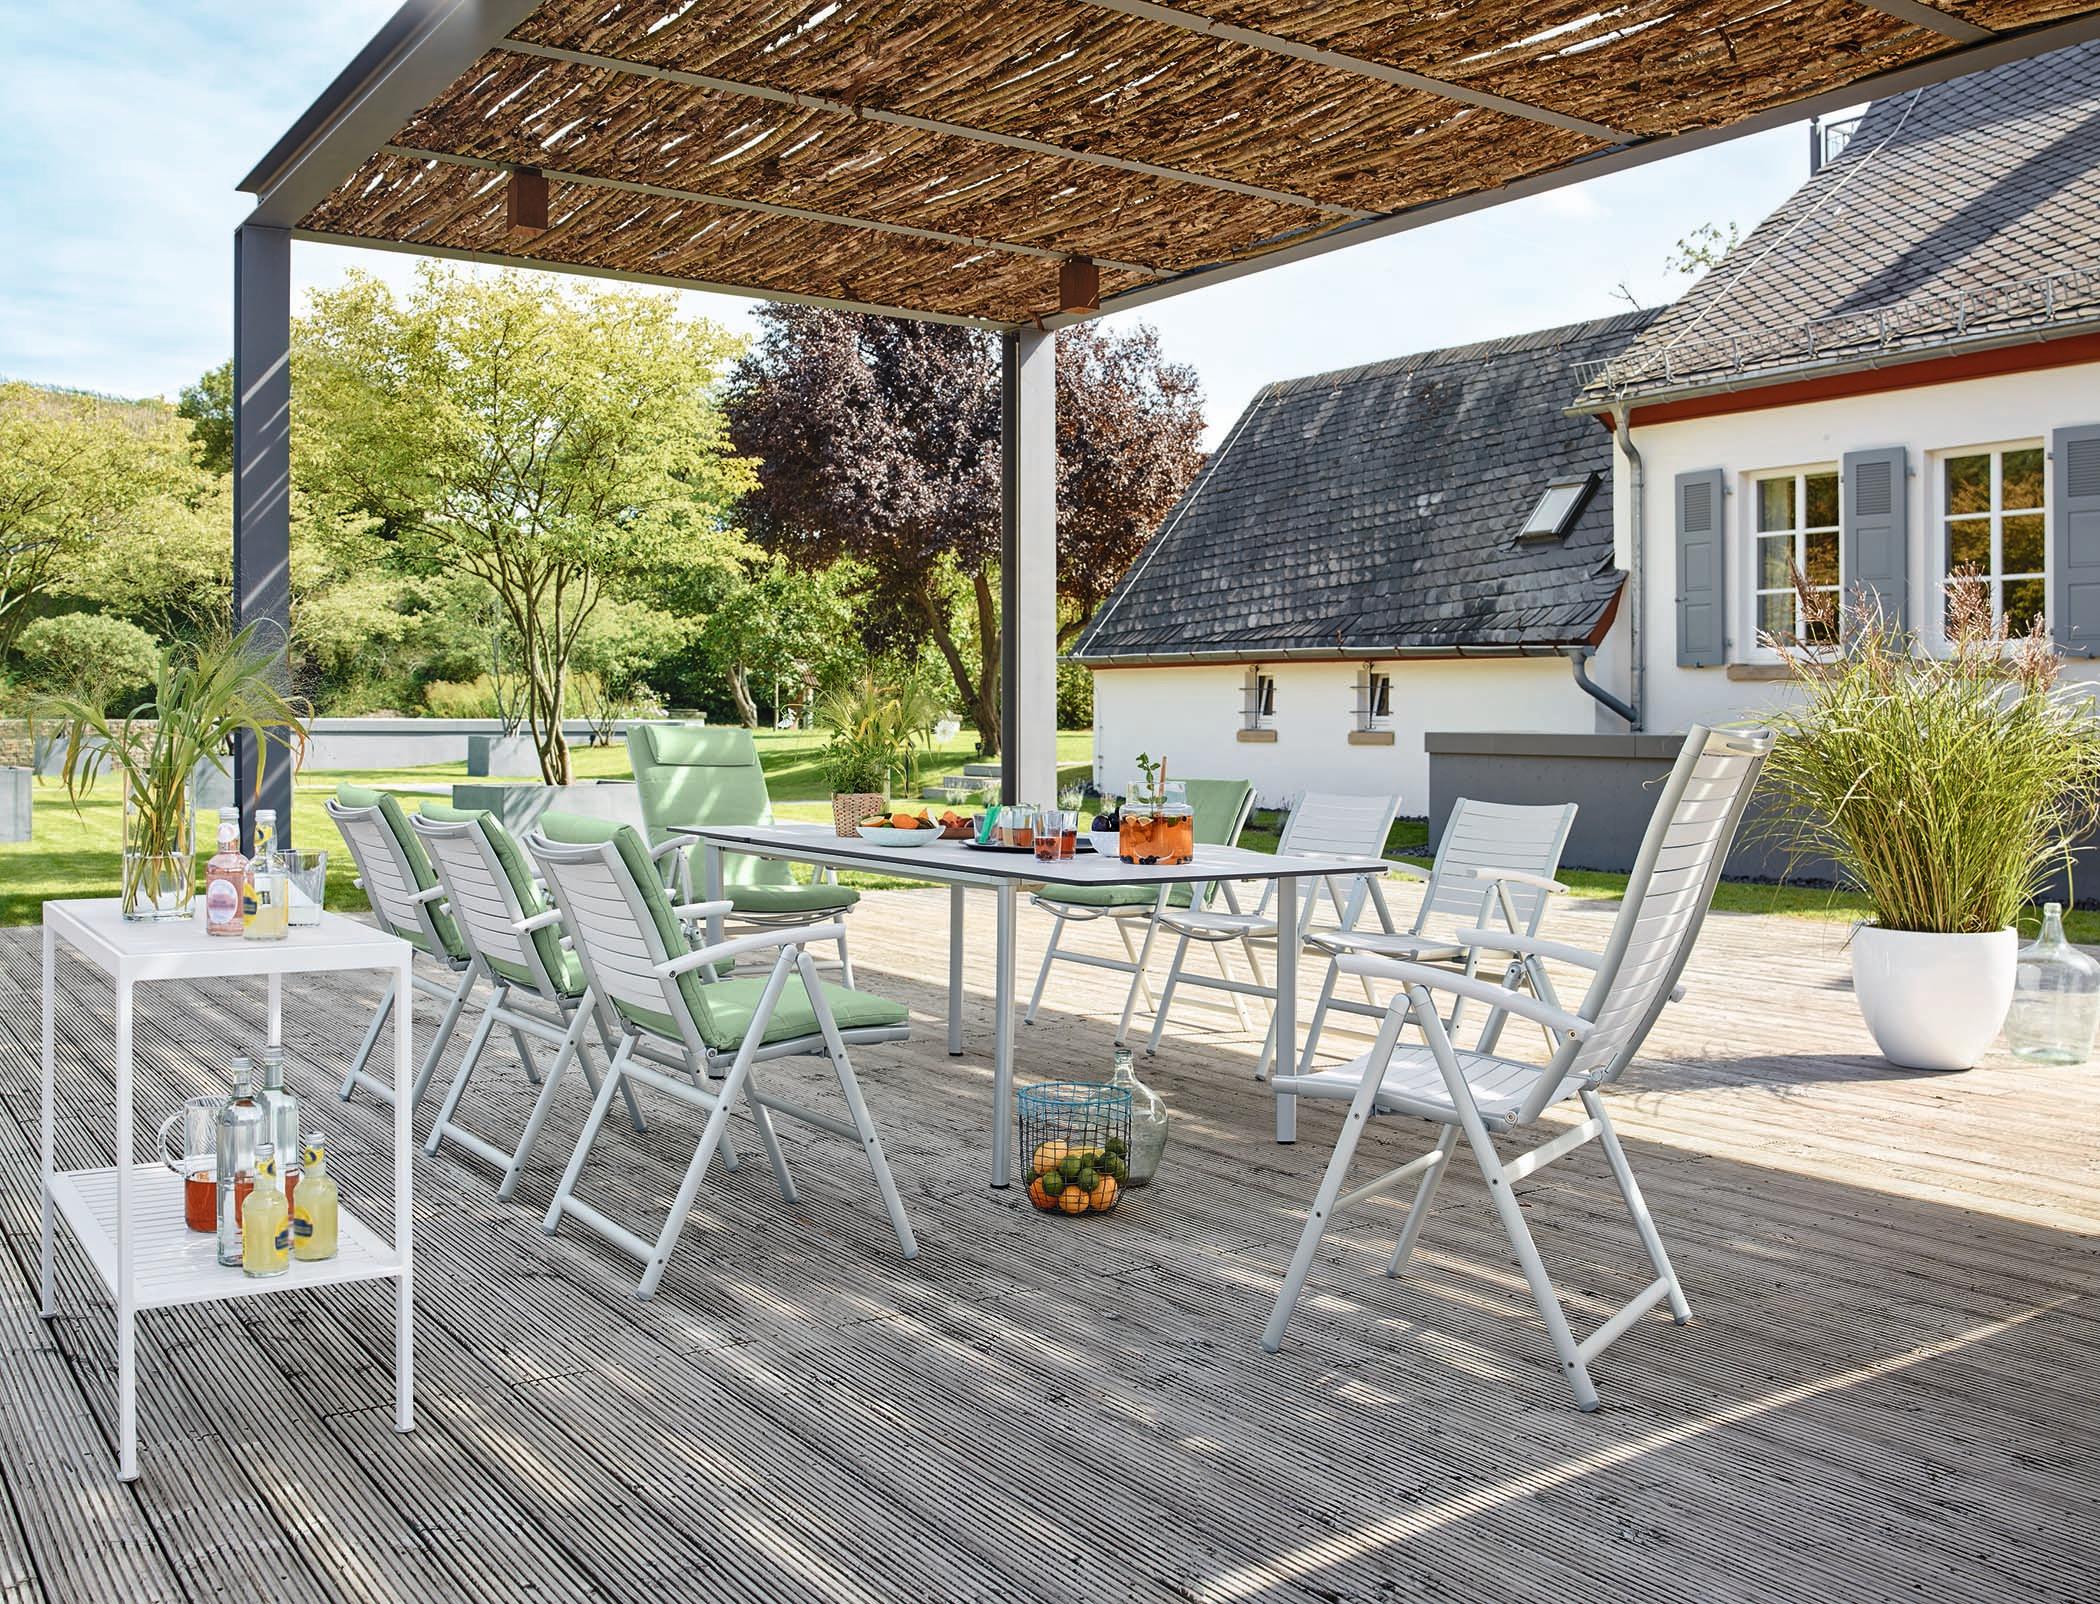 Markise als Sonnenschutz #stuhl #gartenmöbel #gartentisch #tisch #terrassengestaltung #terrassenmöbel ©Garpa